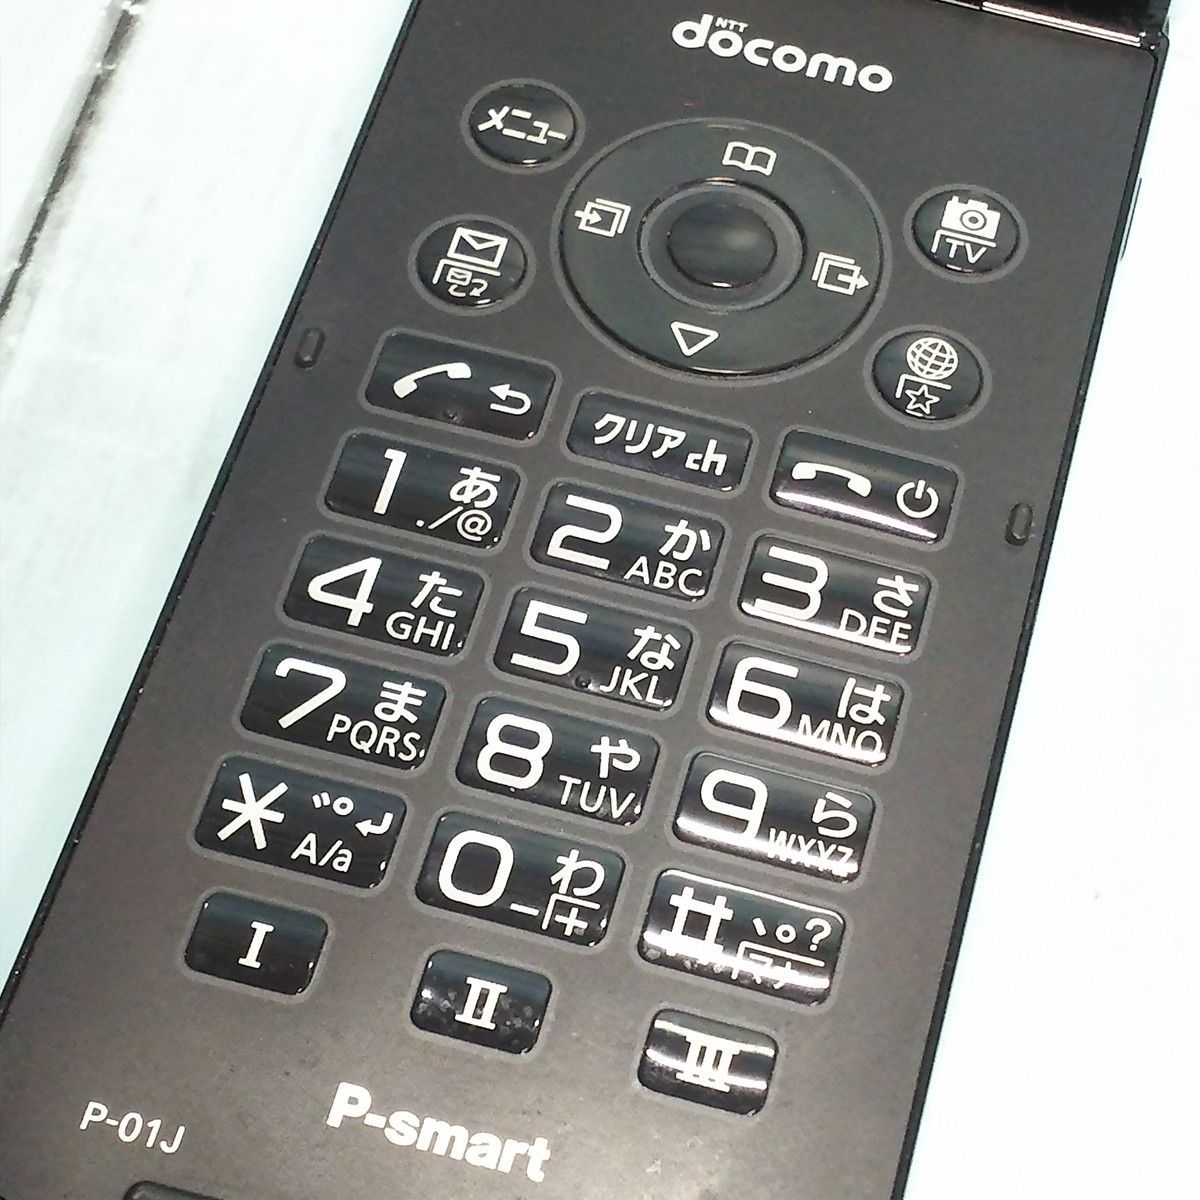 docomo Panasonic P-smart ケータイ P-01J ブラック [訳あり] 本体 白 